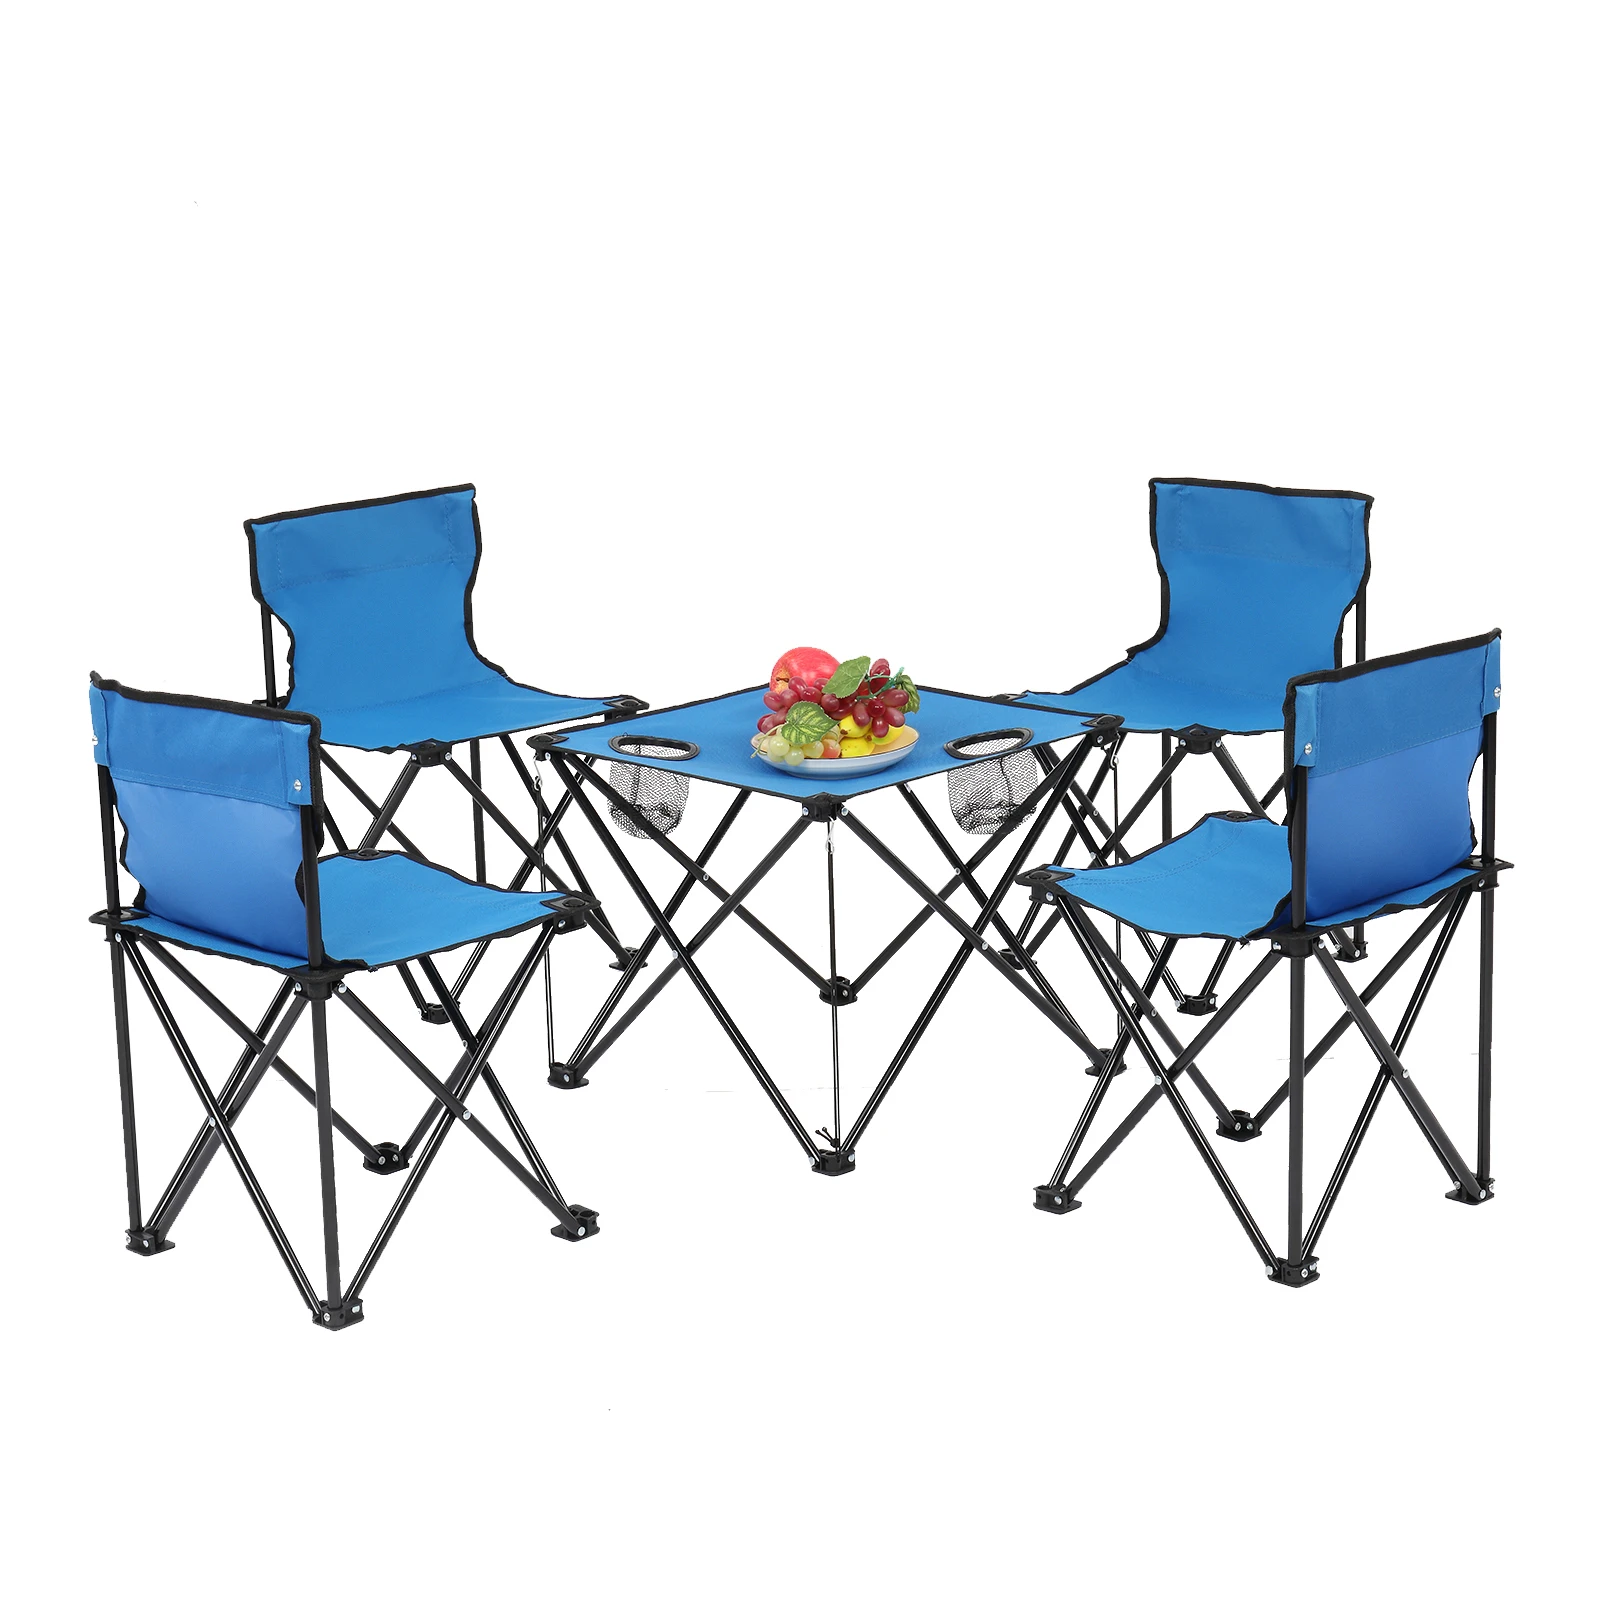 저렴한 옥스포드 천 캠핑 접이식 1 사각형 테이블 4 의자 세트 블루 야외 정원 피크닉 데스크 휴대용 하이킹 파티오 낚시 좌석 낚시